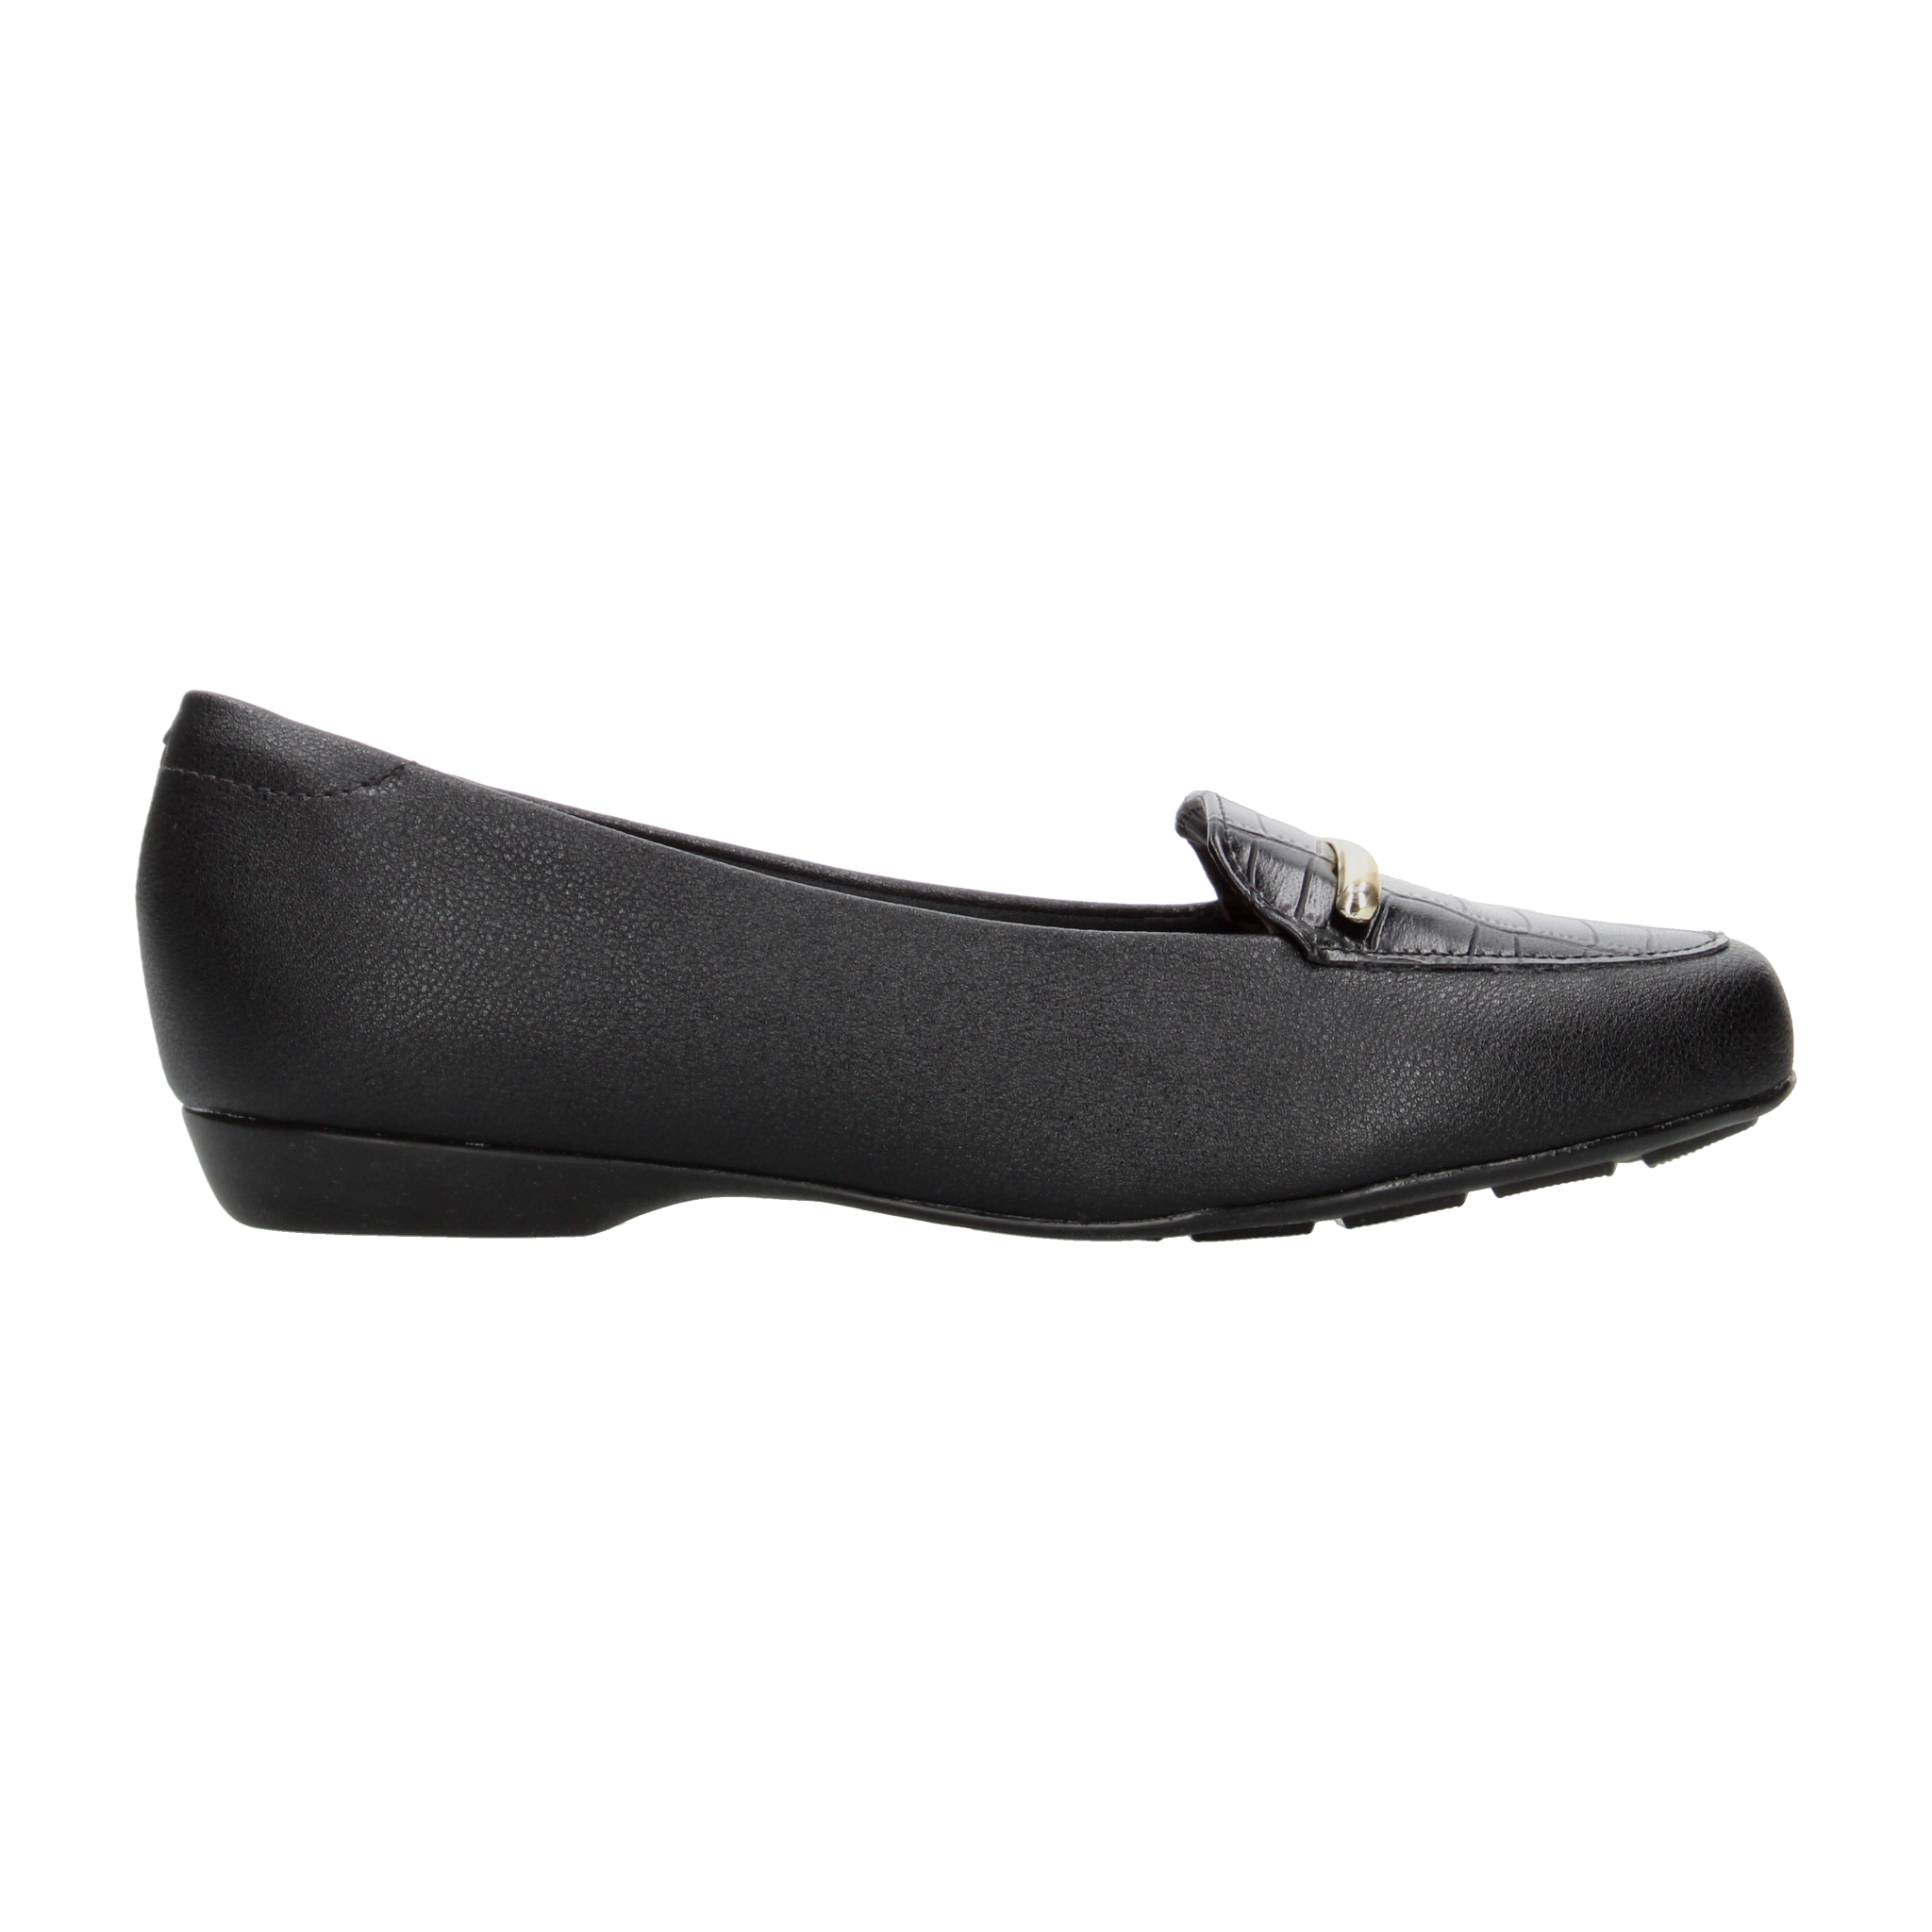 Zapato Confort Modare Negro para Mujer [MOD30] - Zapaterias Torreon